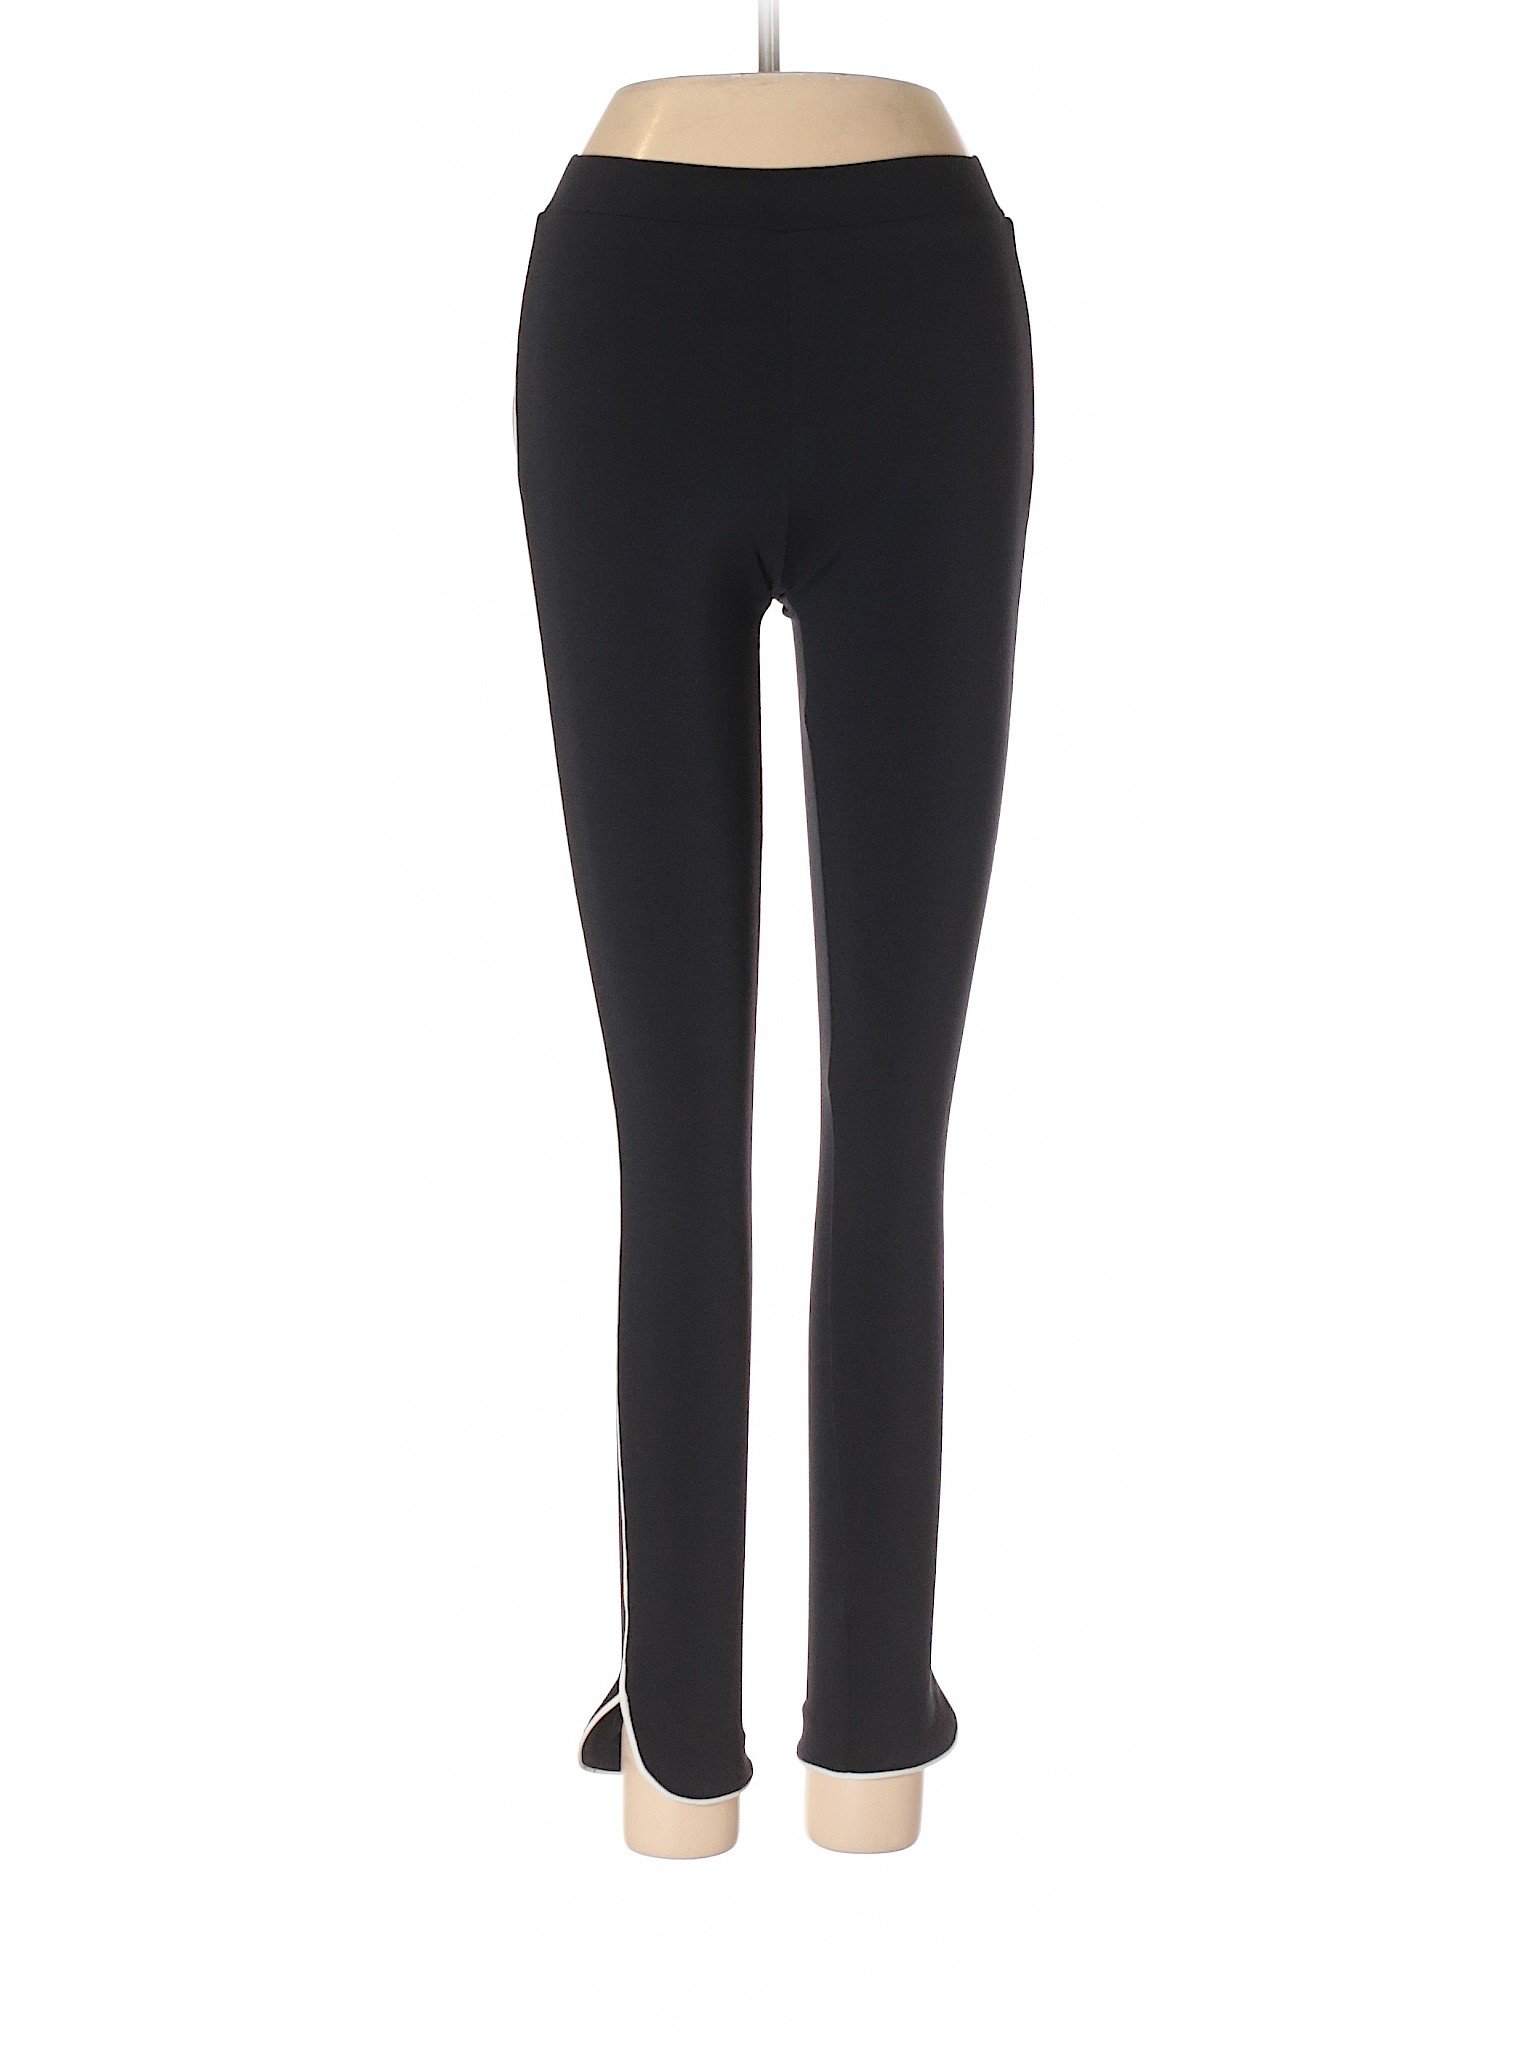 David Lerner Solid Black Active Pants Size XS - 81% off | thredUP